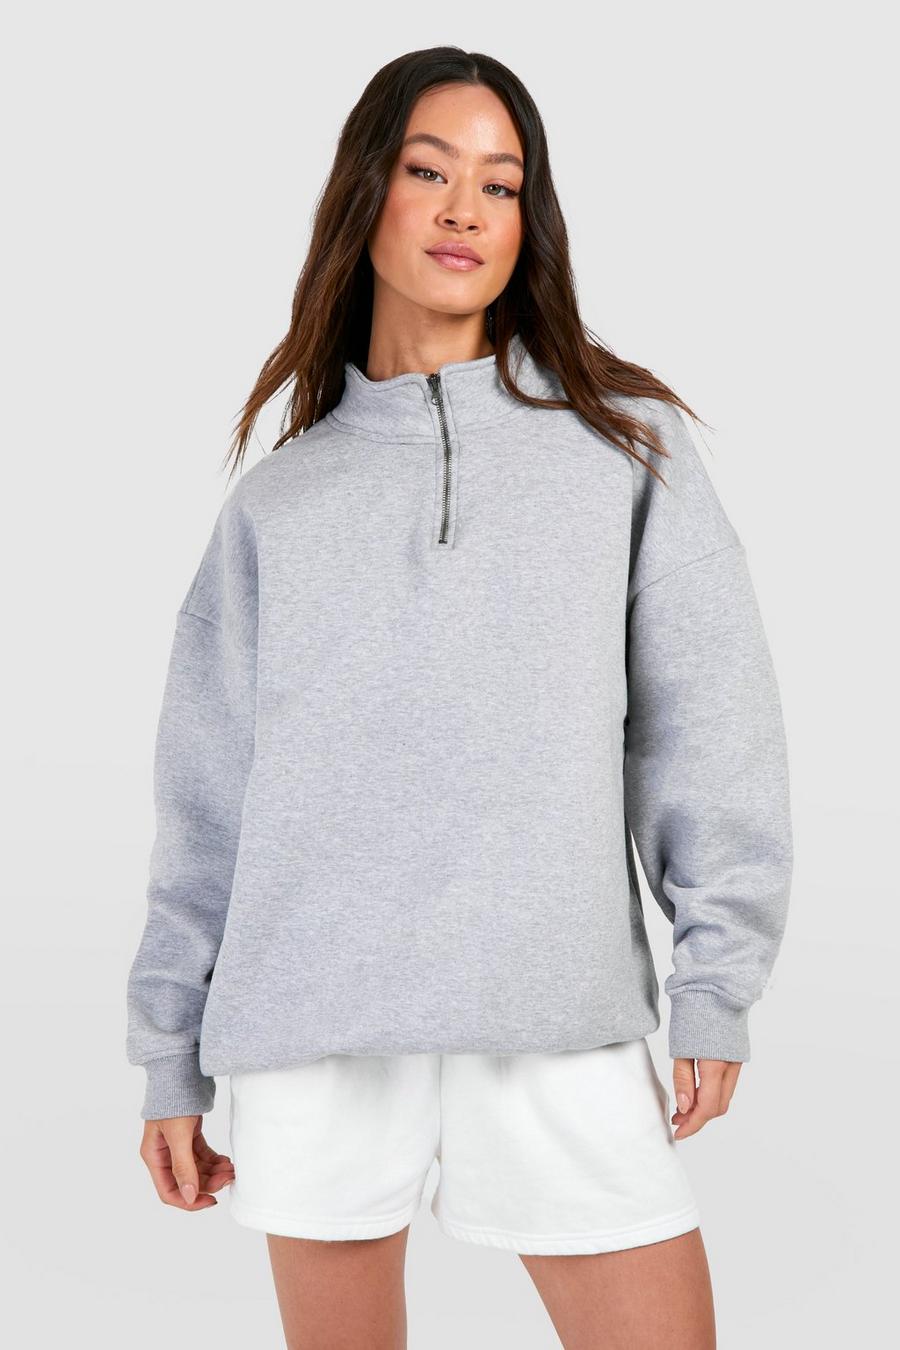 Ash grey Craghoppers  Basic Oversized Half Zip Sweatshirt